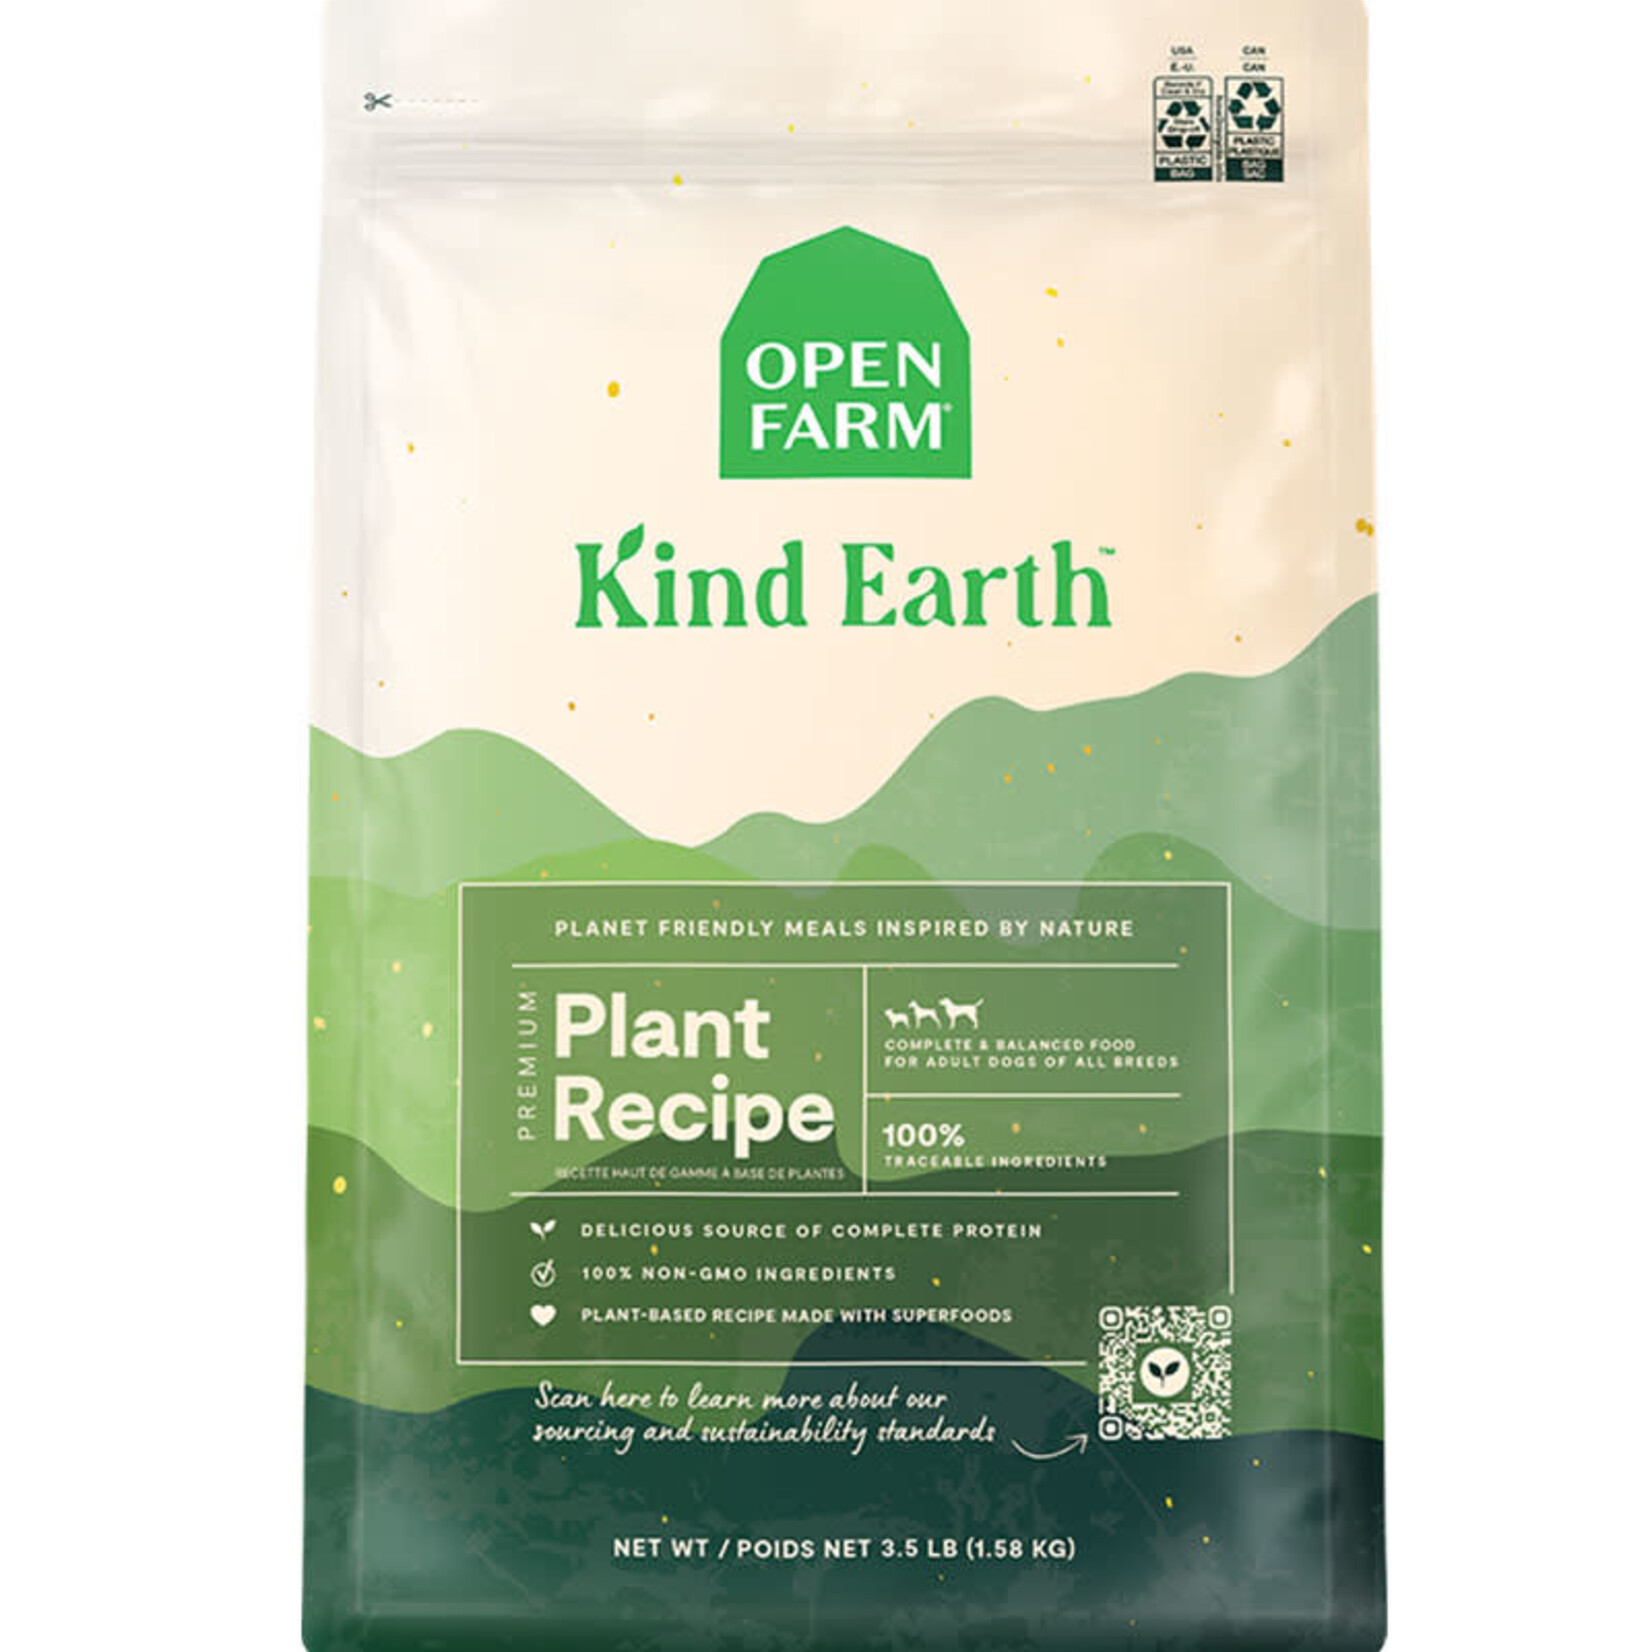 Open Farm Kind Earth - Croquettes à base de plantes